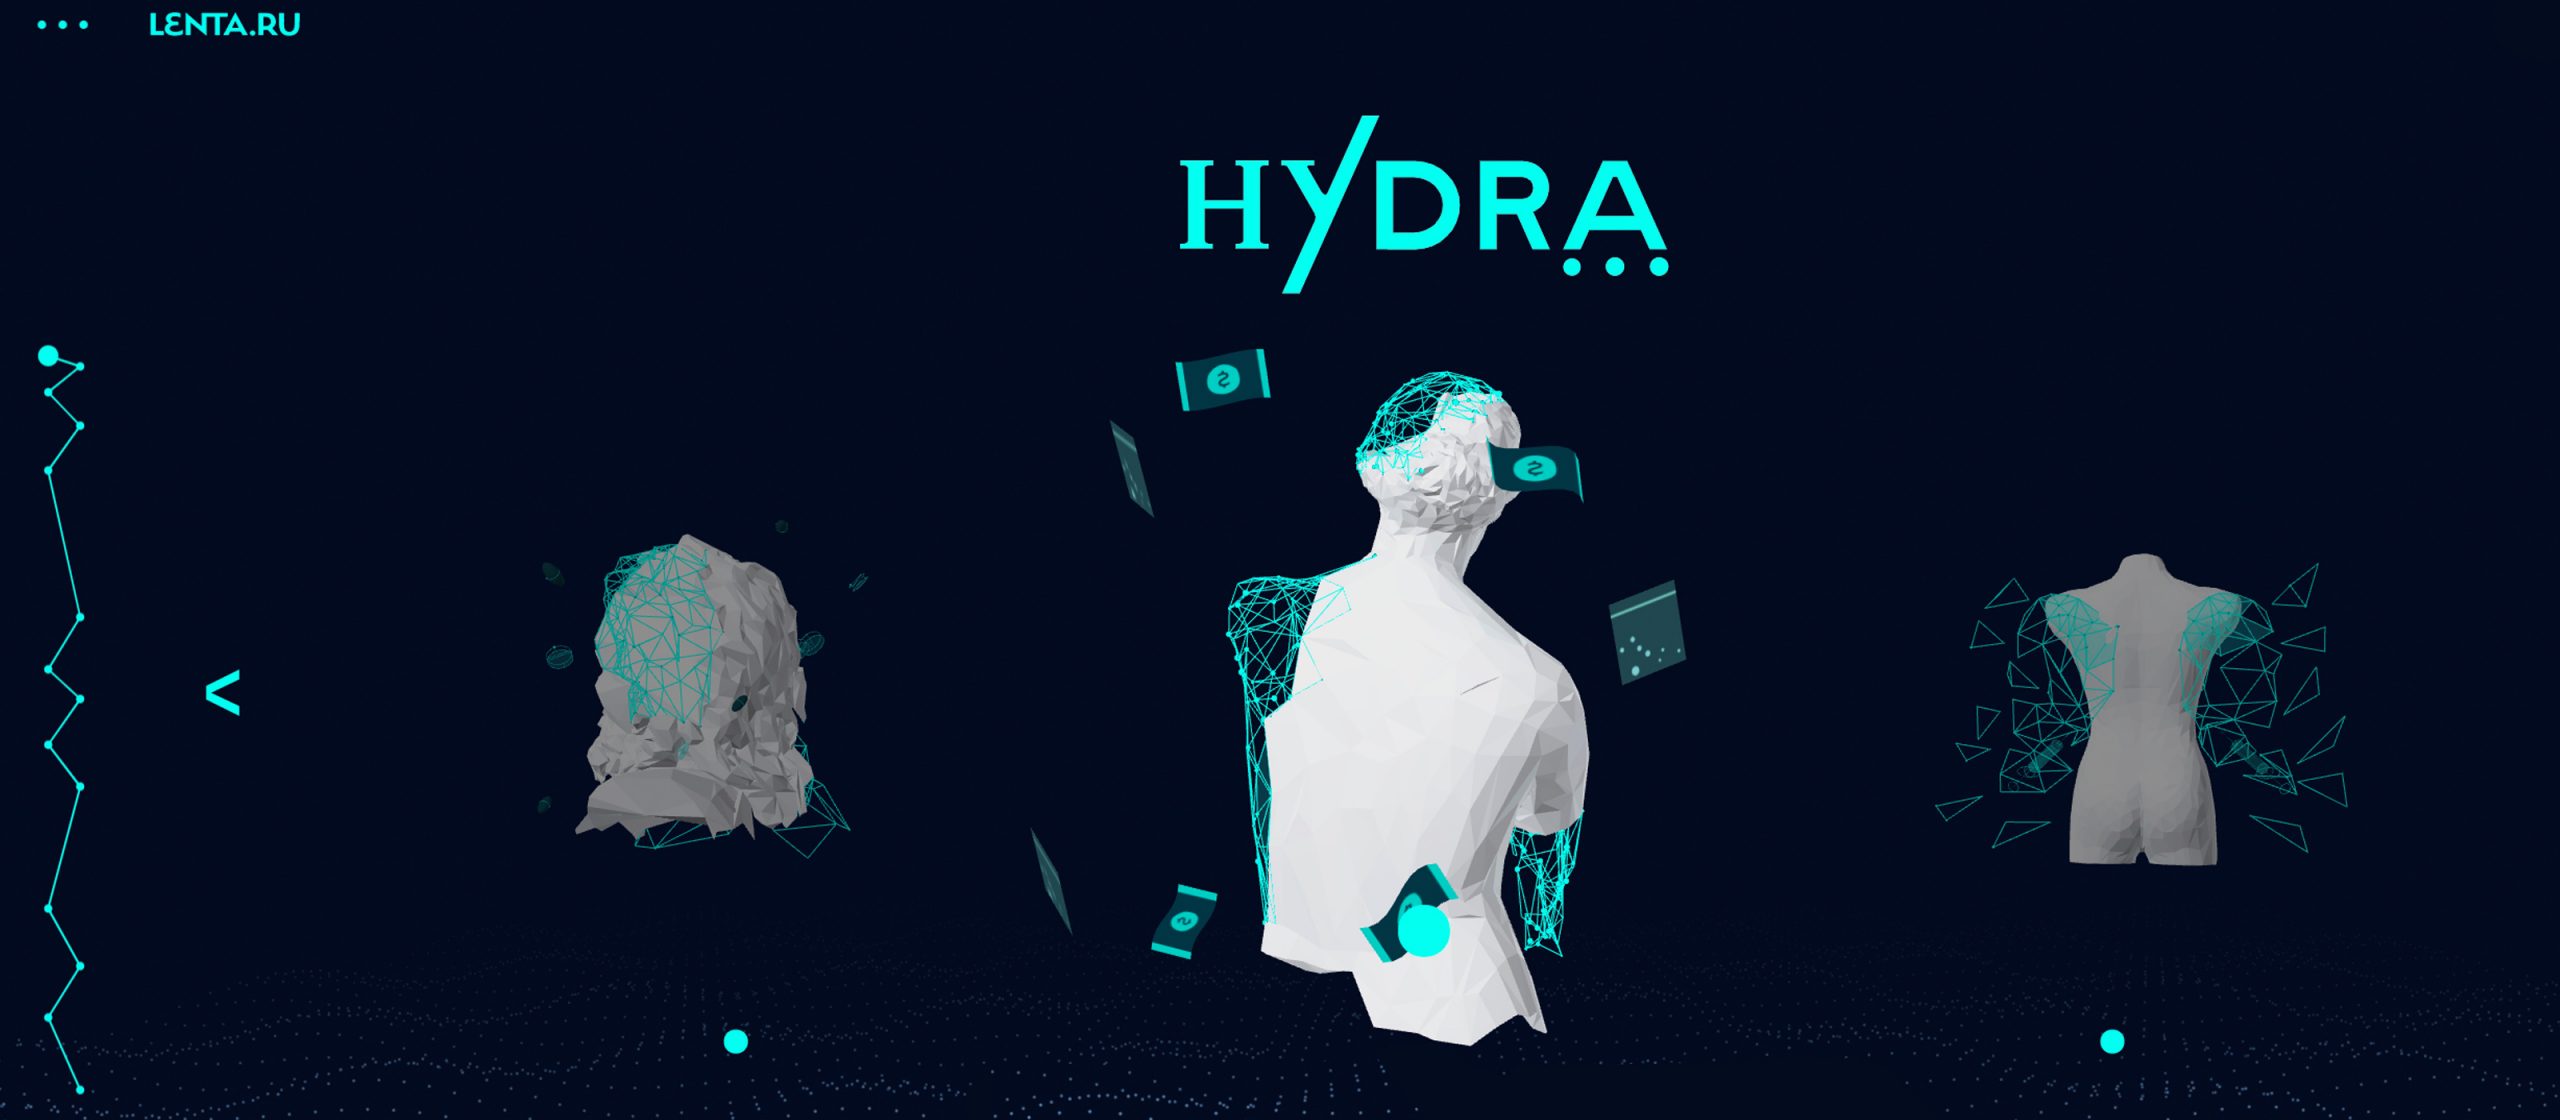 Скачать бесплатно darknet hidra конопля прага